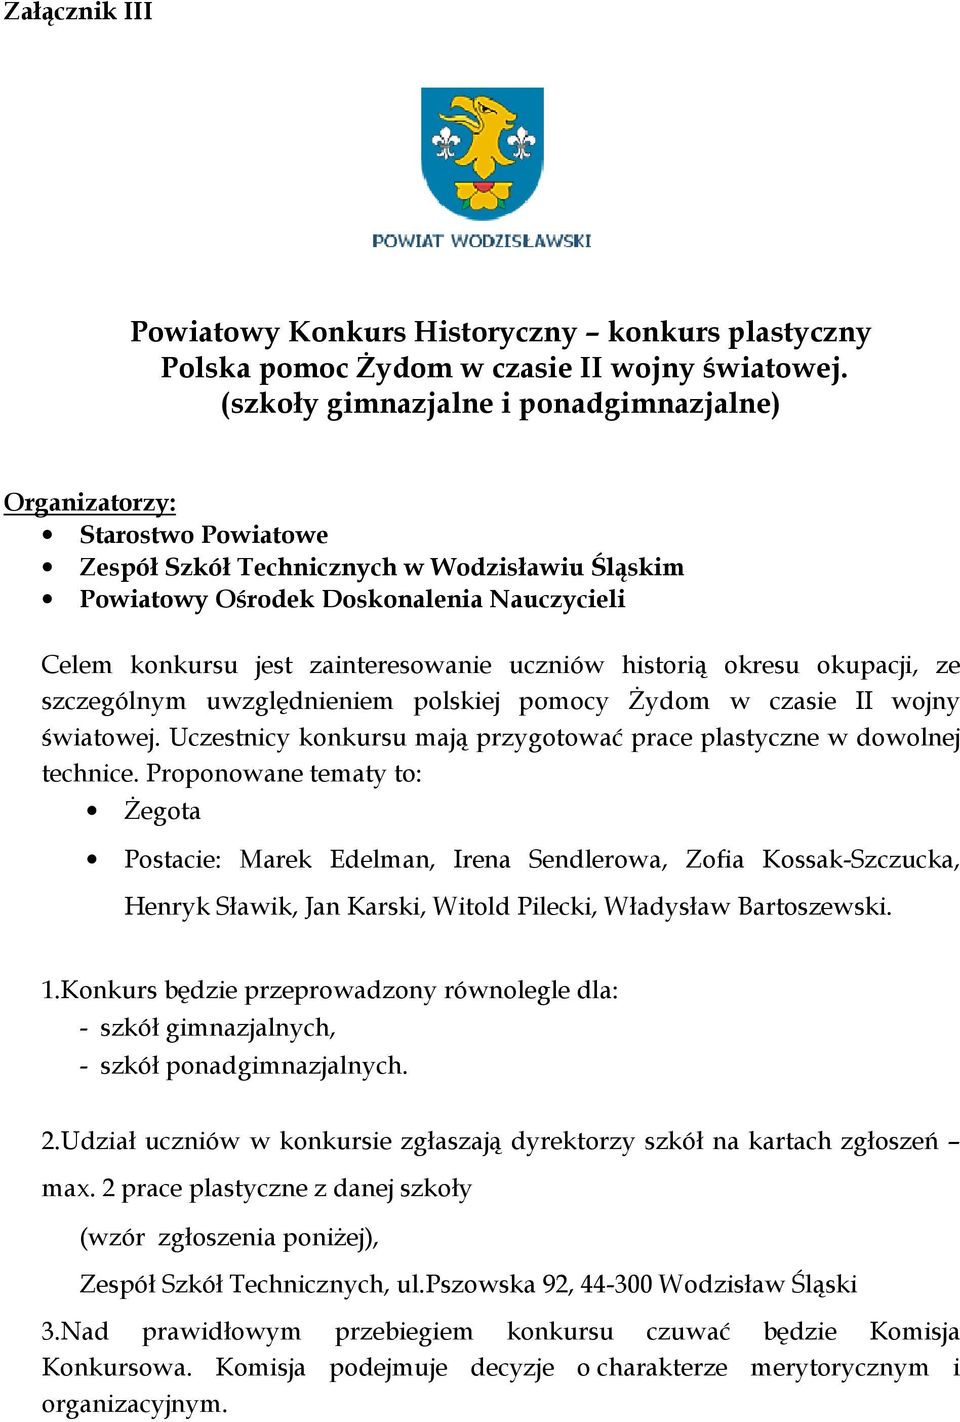 zainteresowanie uczniów historią okresu okupacji, ze szczególnym uwzględnieniem polskiej pomocy śydom w czasie II wojny światowej.